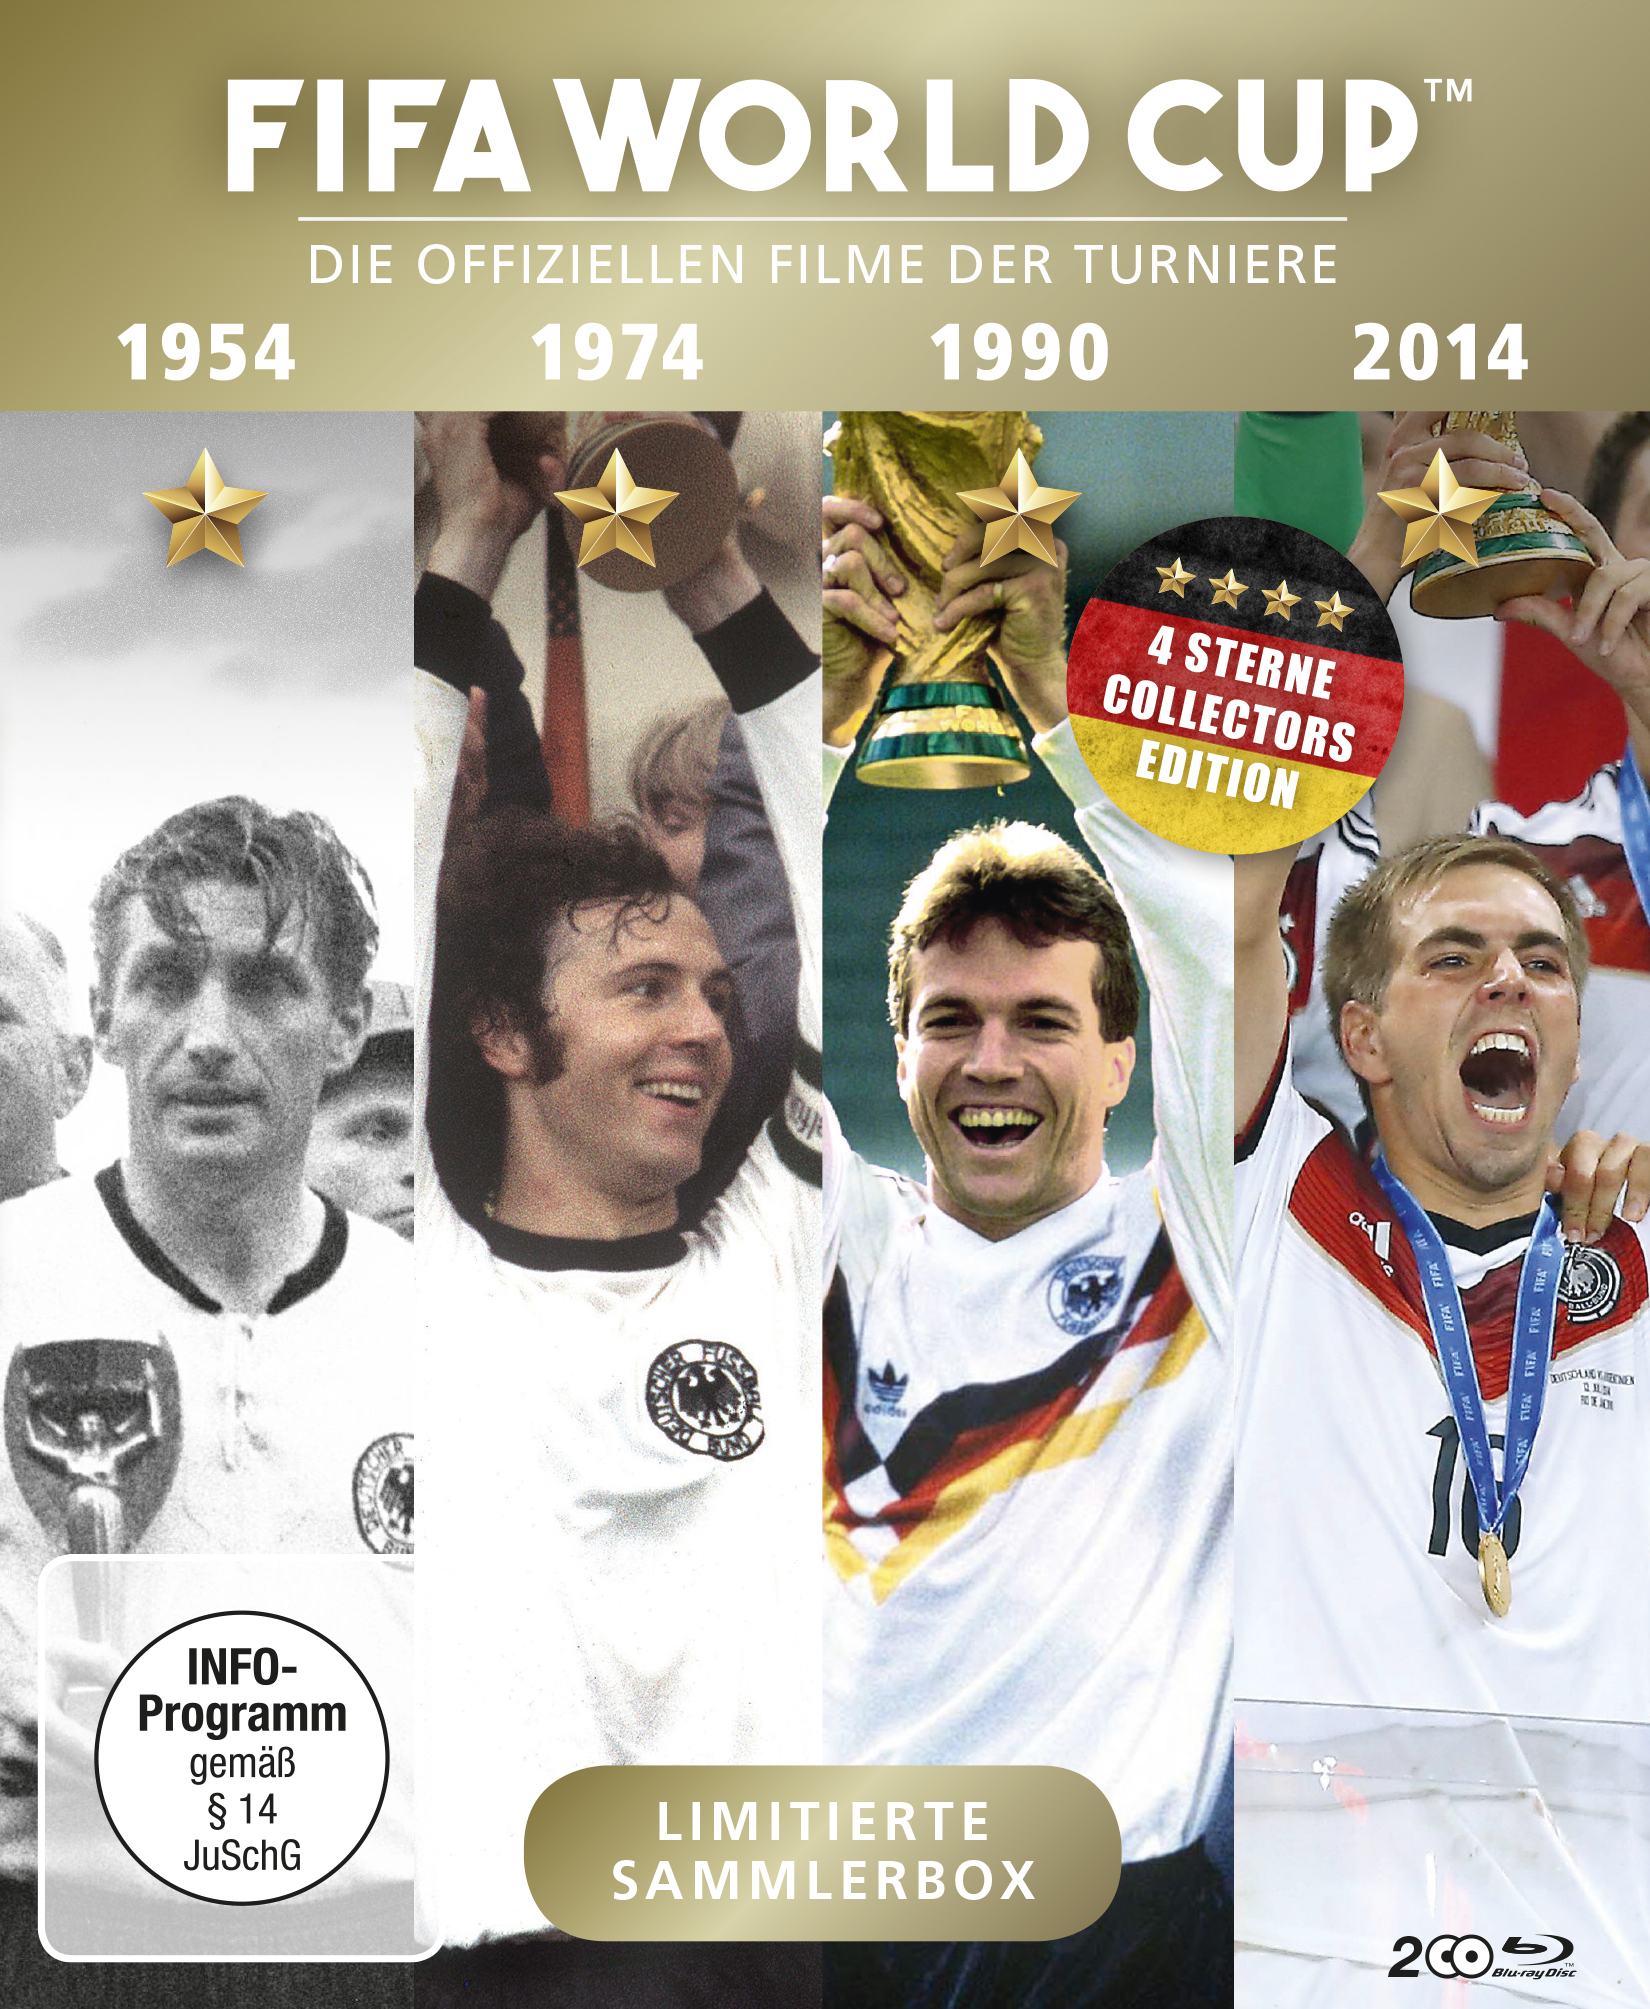 Die Filme 74 Blu-ray 90 * CUP FIFA - * 14 WORLD 54 offiziellen * der Turniere